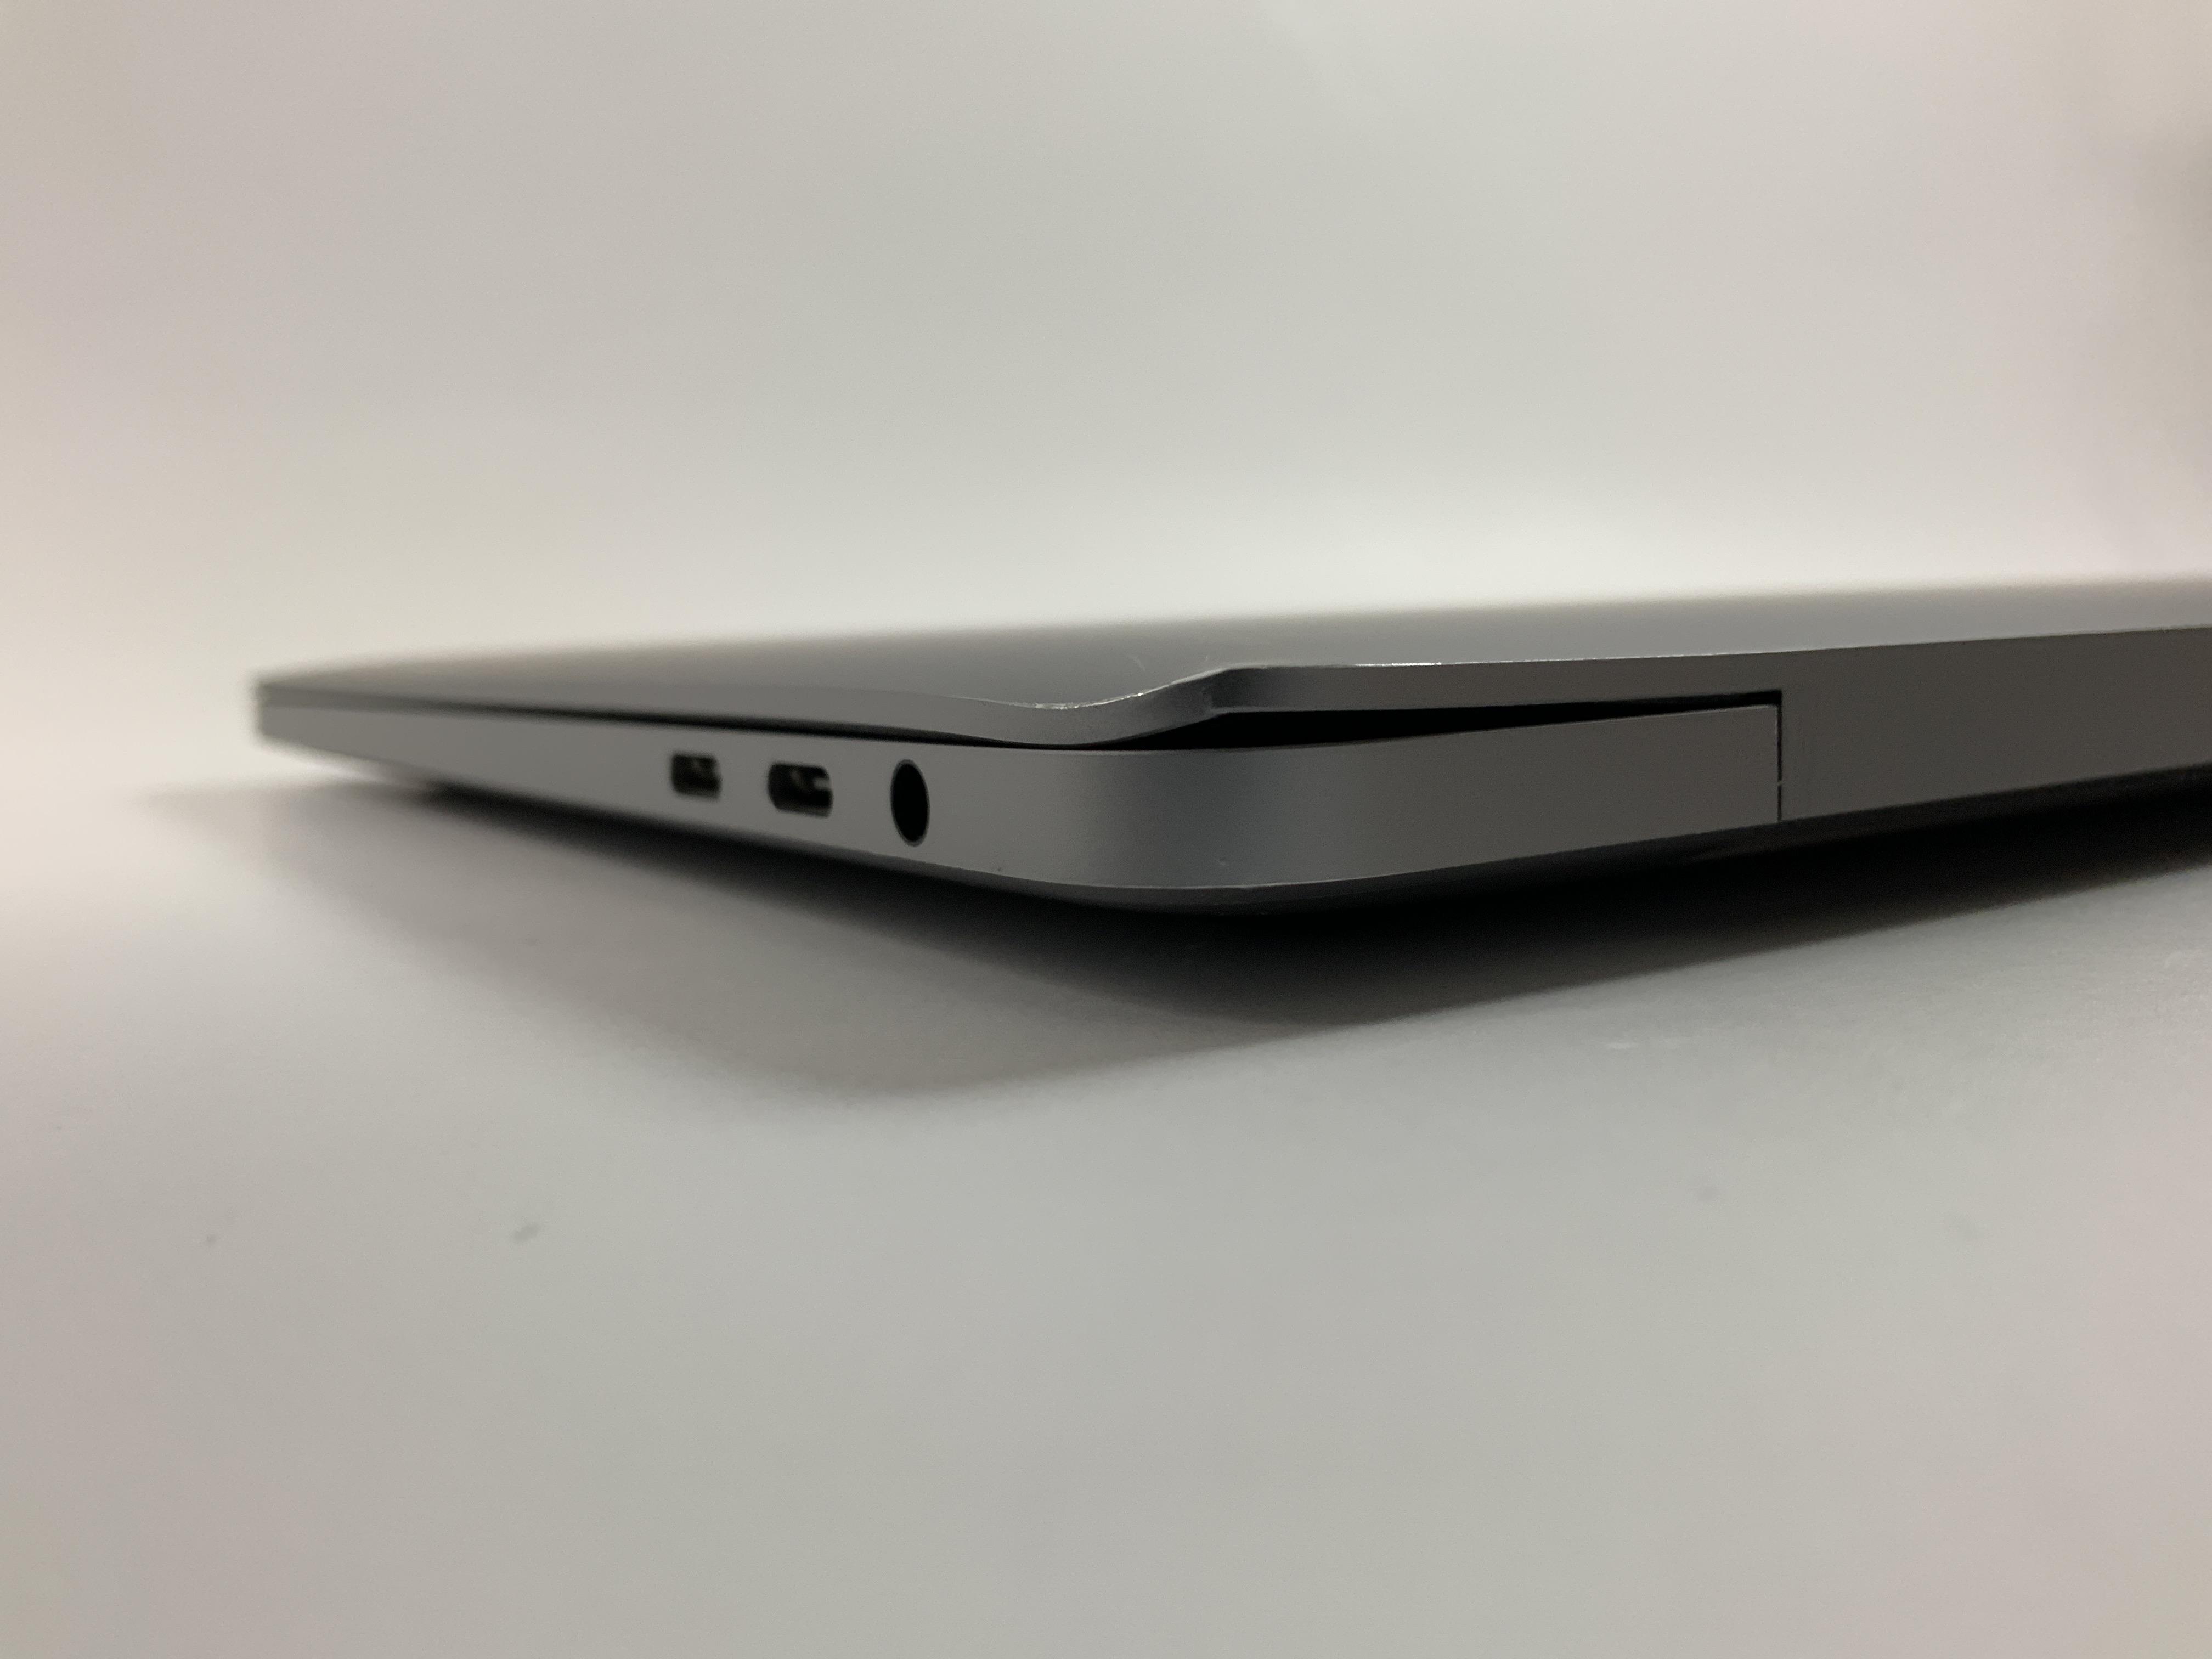 MacBook Pro 13" 4TBT Mid 2020 (Intel Quad-Core i5 2.0 GHz 16 GB RAM 512 GB SSD), Space Gray, Intel Quad-Core i5 2.0 GHz, 16 GB RAM, 512 GB SSD, obraz 5